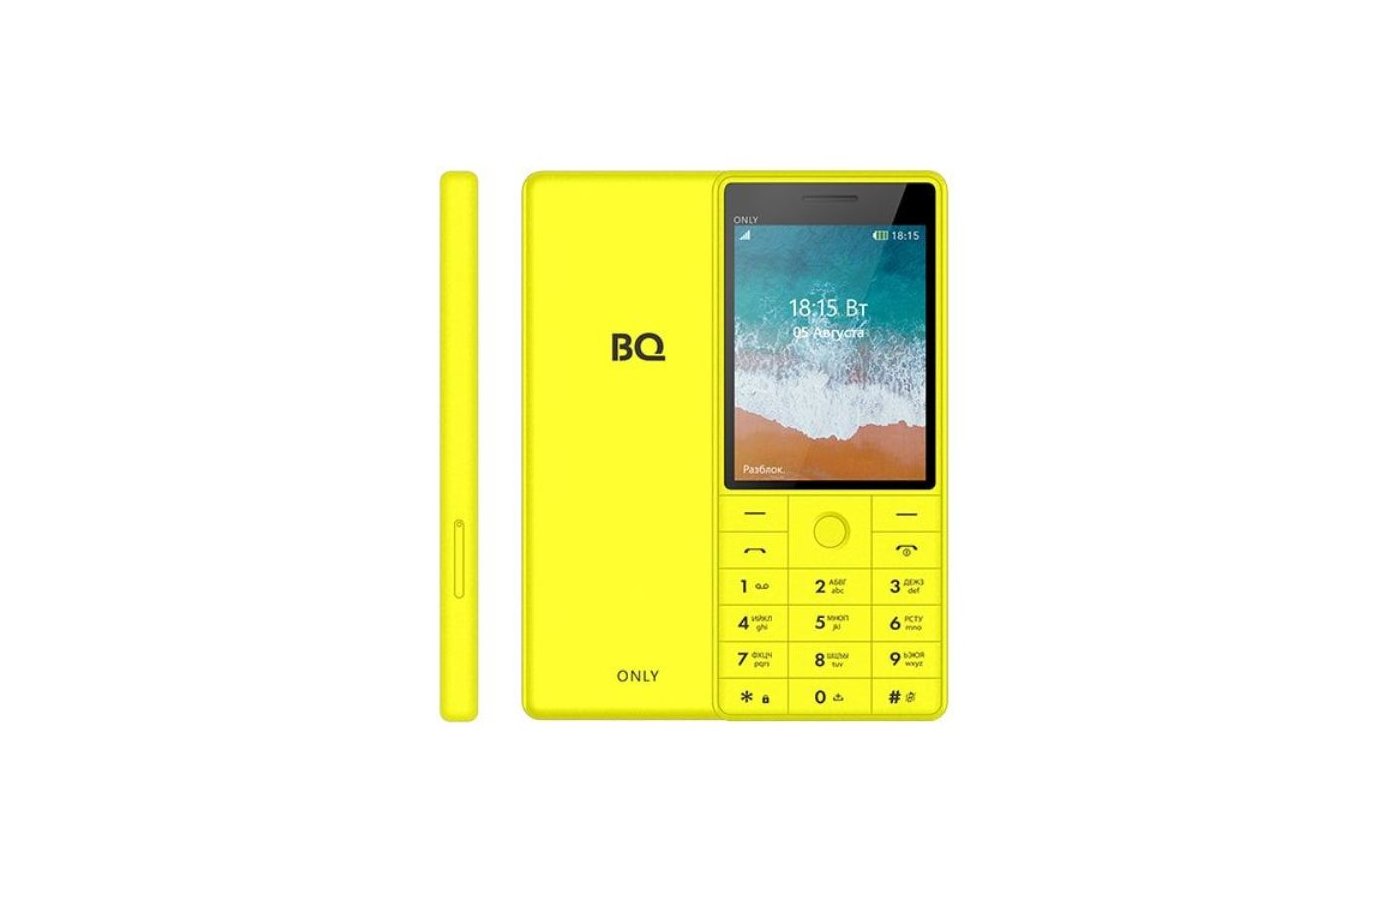 Only телефон. BQ 2815 only. Мобильный телефон BQ BQ-2815 only. Мобильный телефон BQ 2815 only Red. BQ 2815 характеристики.